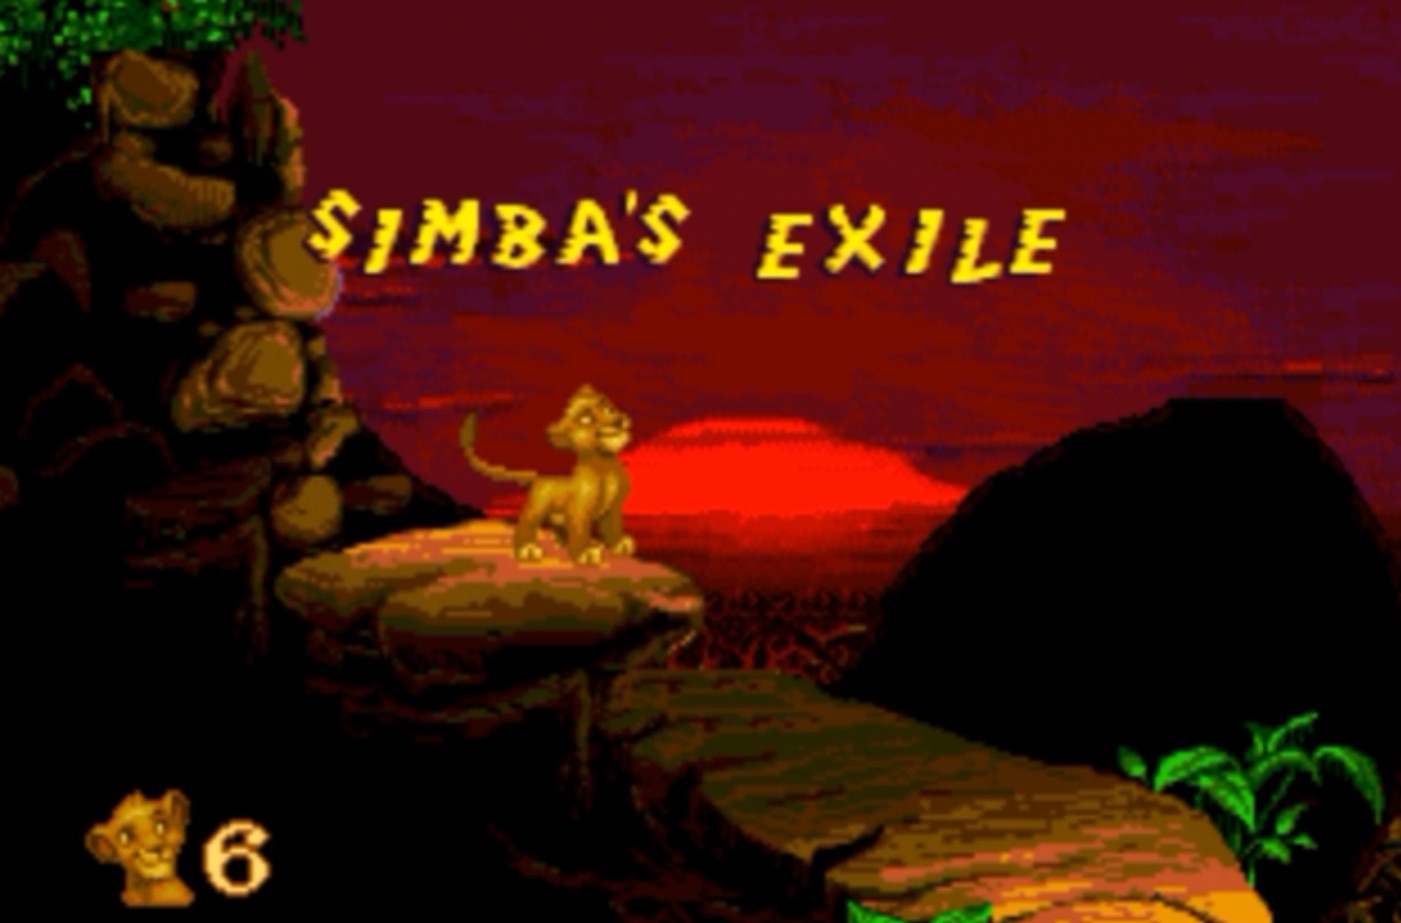 Sega Mega Drive 2 (Smd) 16-bit The Lion King 1 Level 5 Simba's Exile Прохождение